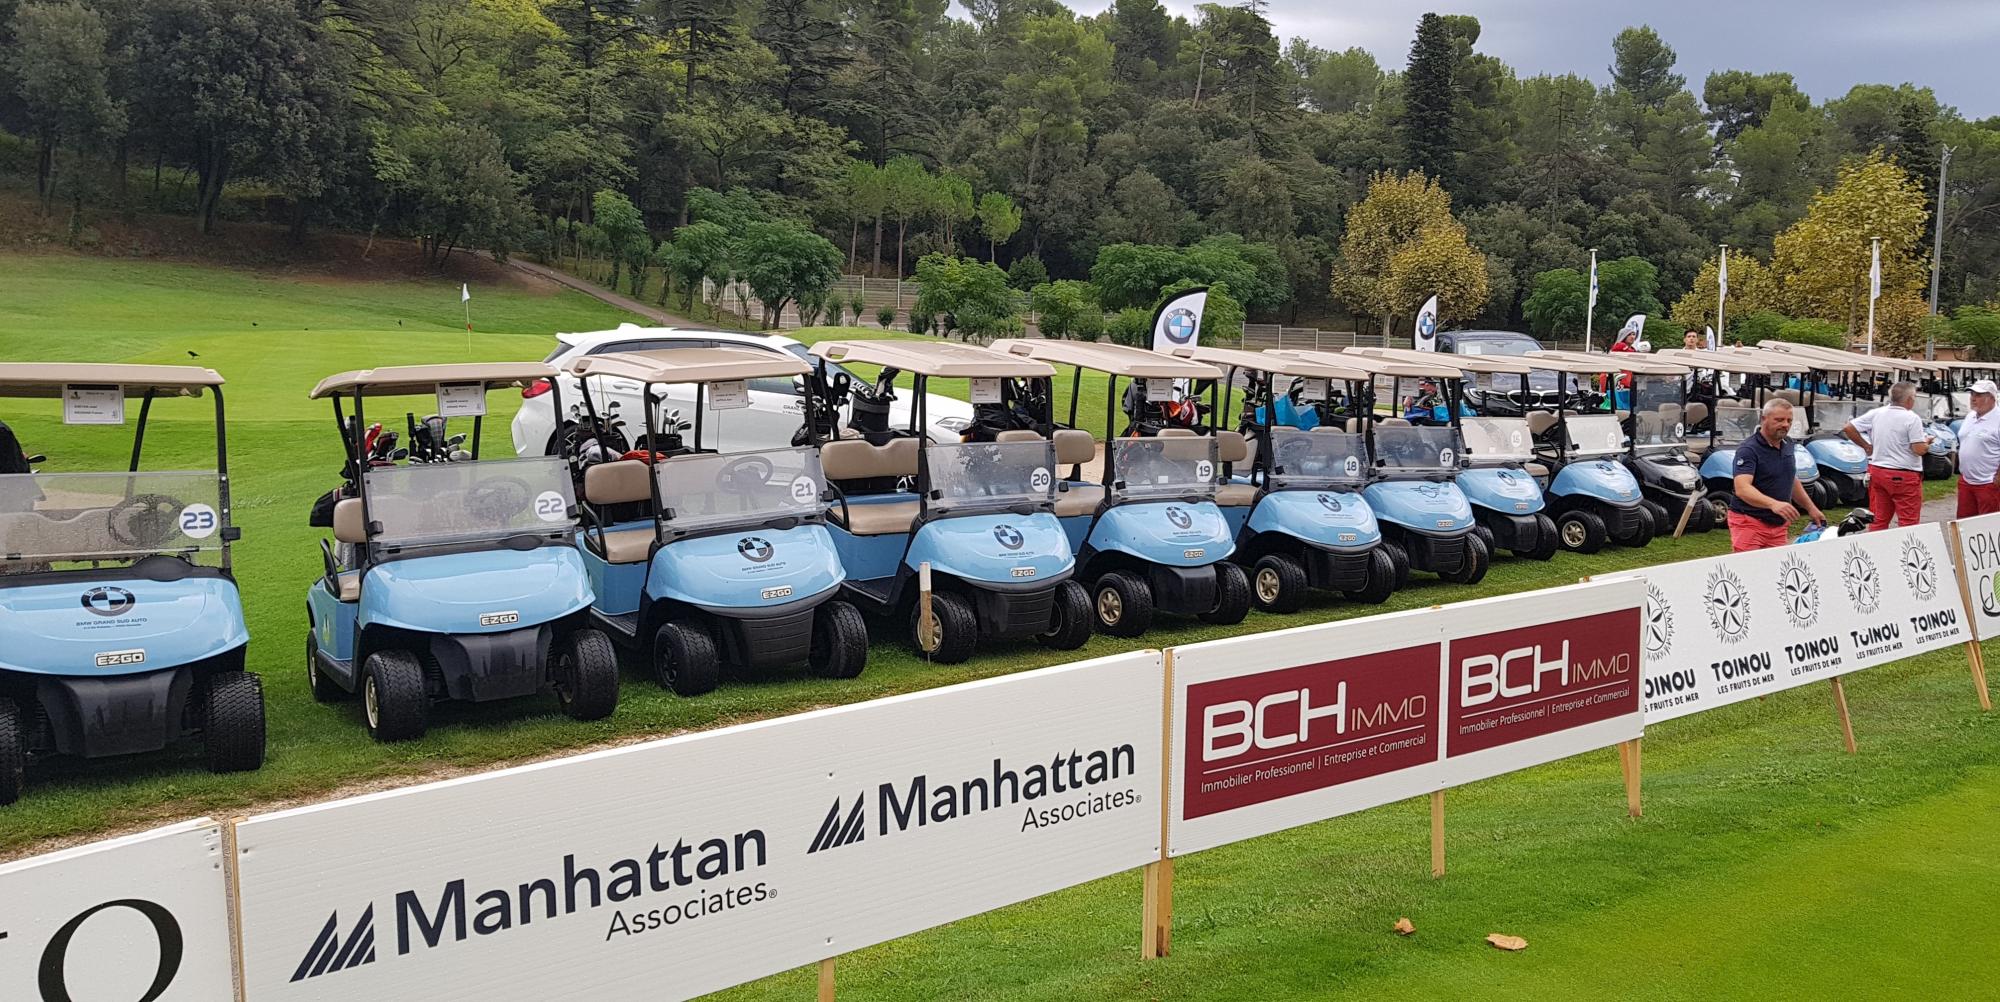  BCH IMMO partenaire de l'Open de Golf Marseille la Salette 